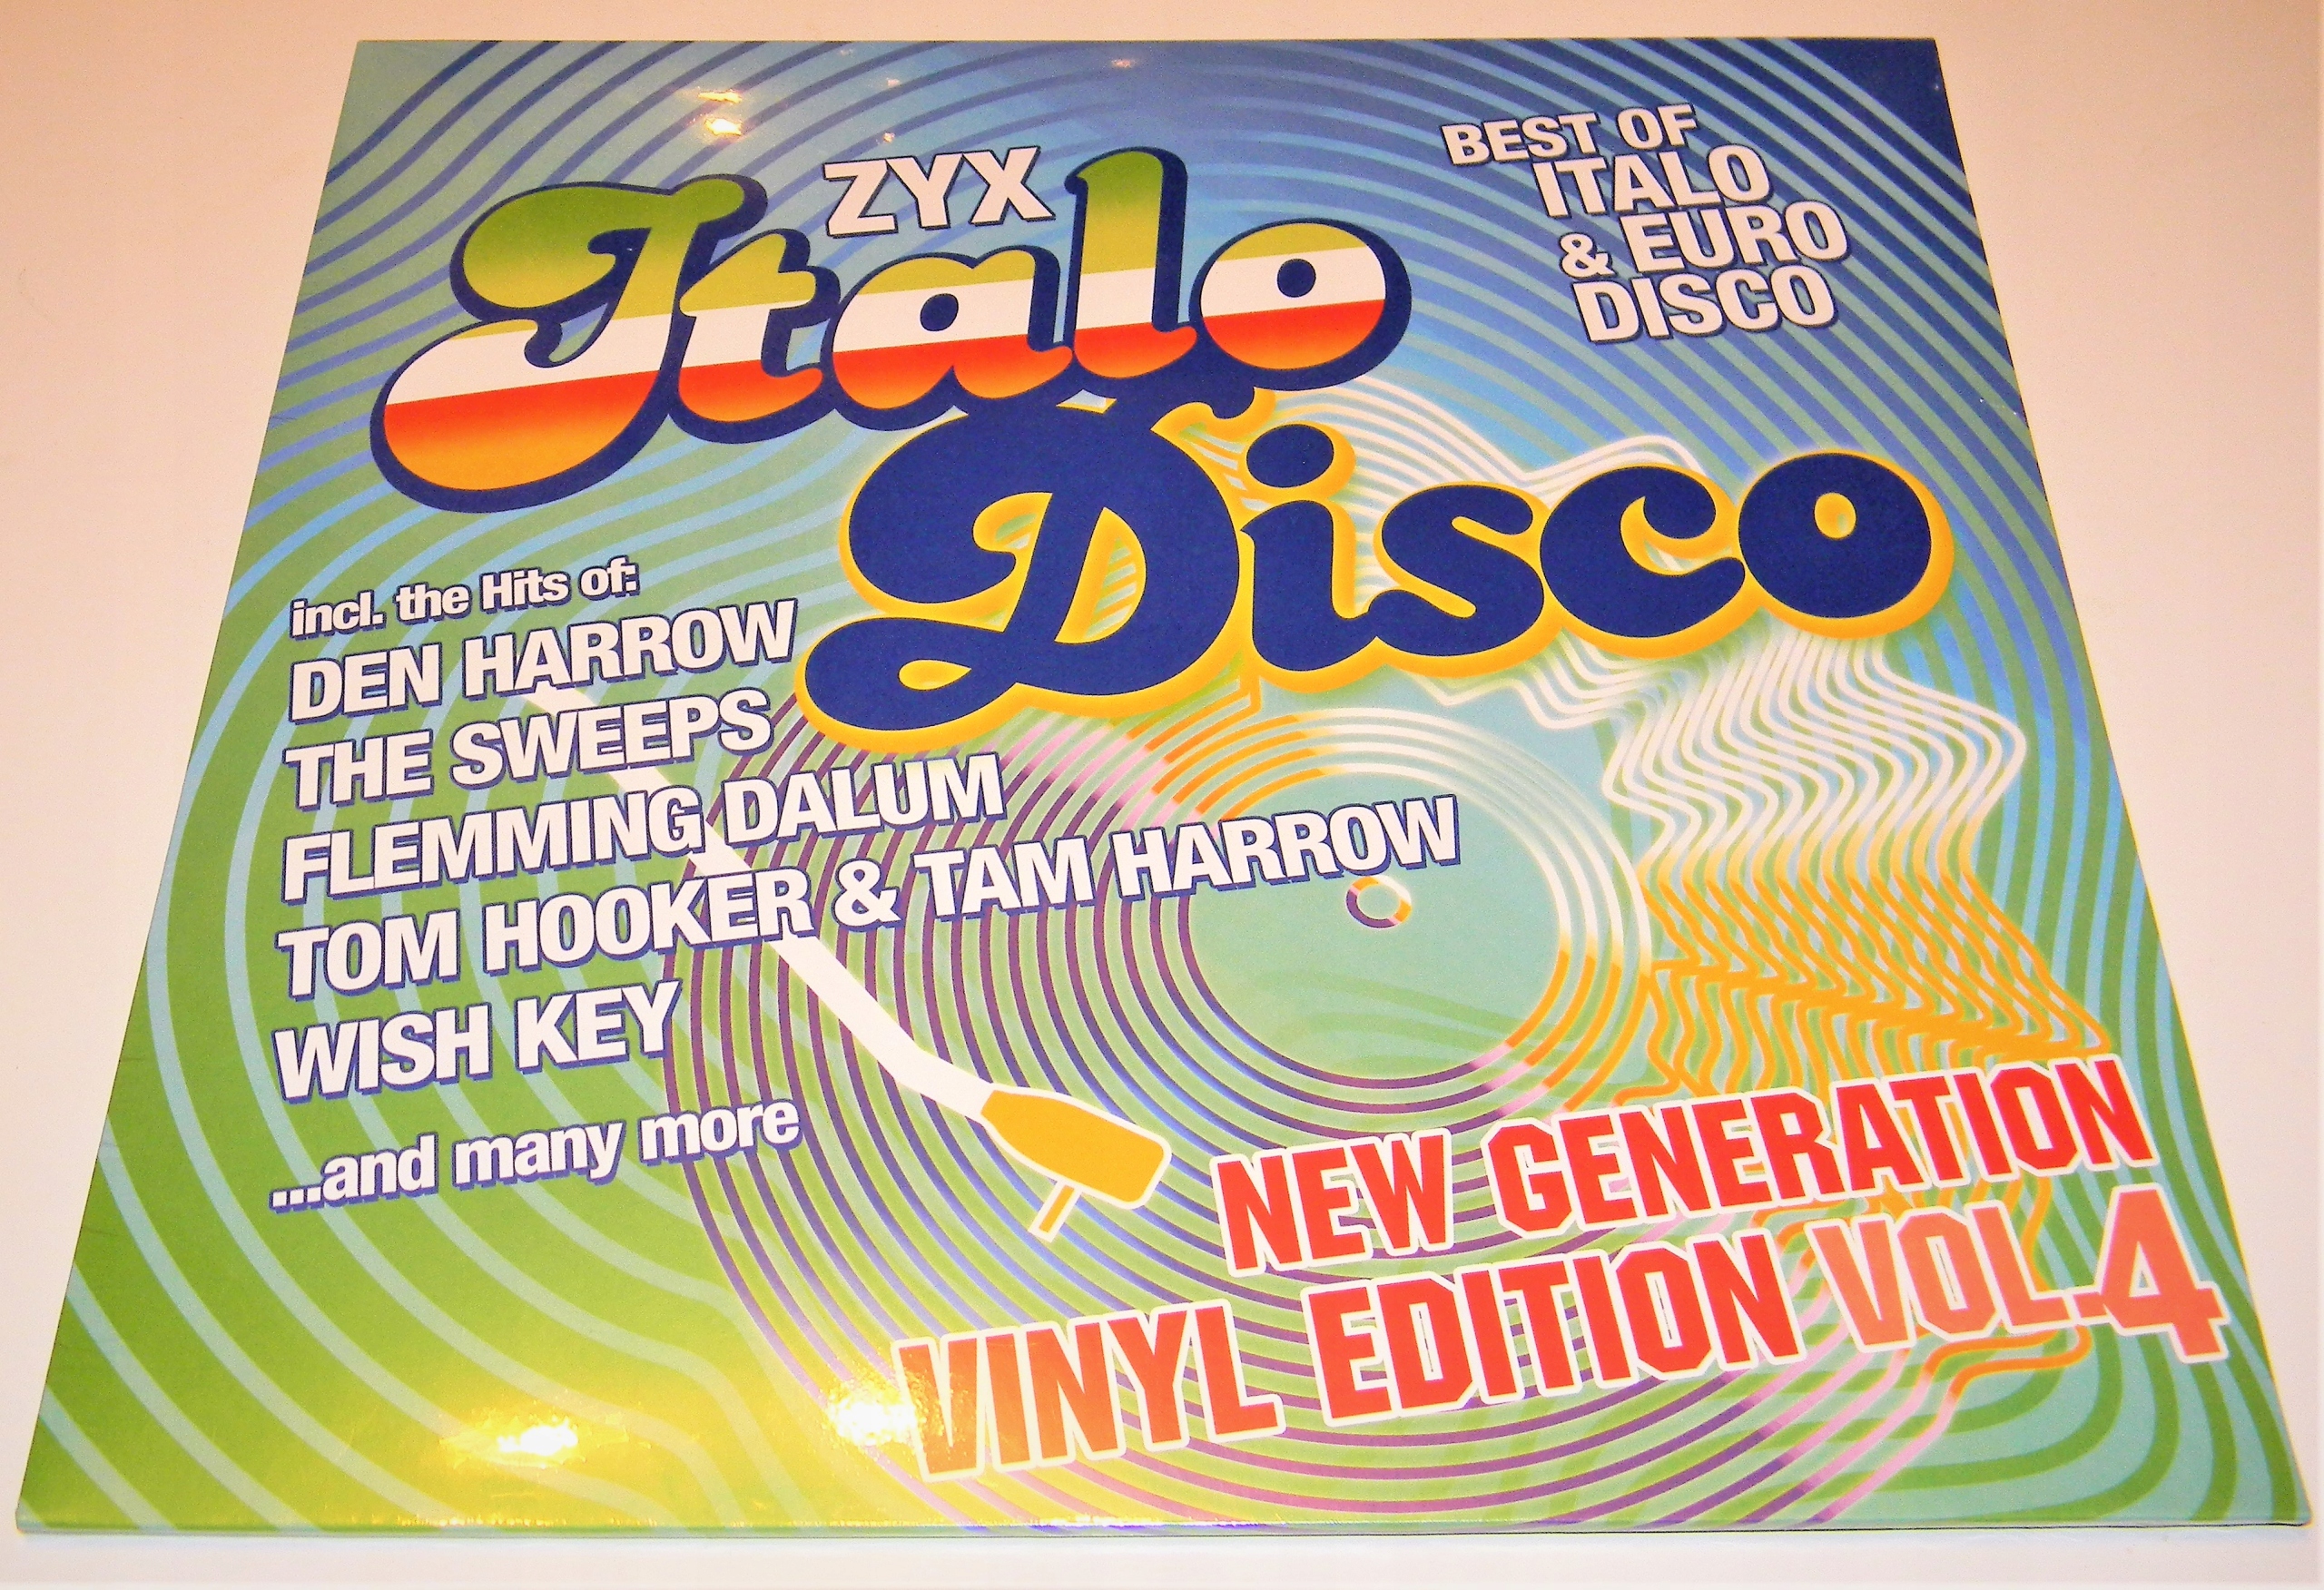 Zyx italo disco new. ZYX Italo Disco New Generation:Vinyl Edition Vol.2. ZYX Italo Disco New Generation Vinyl Edition Vol.5.